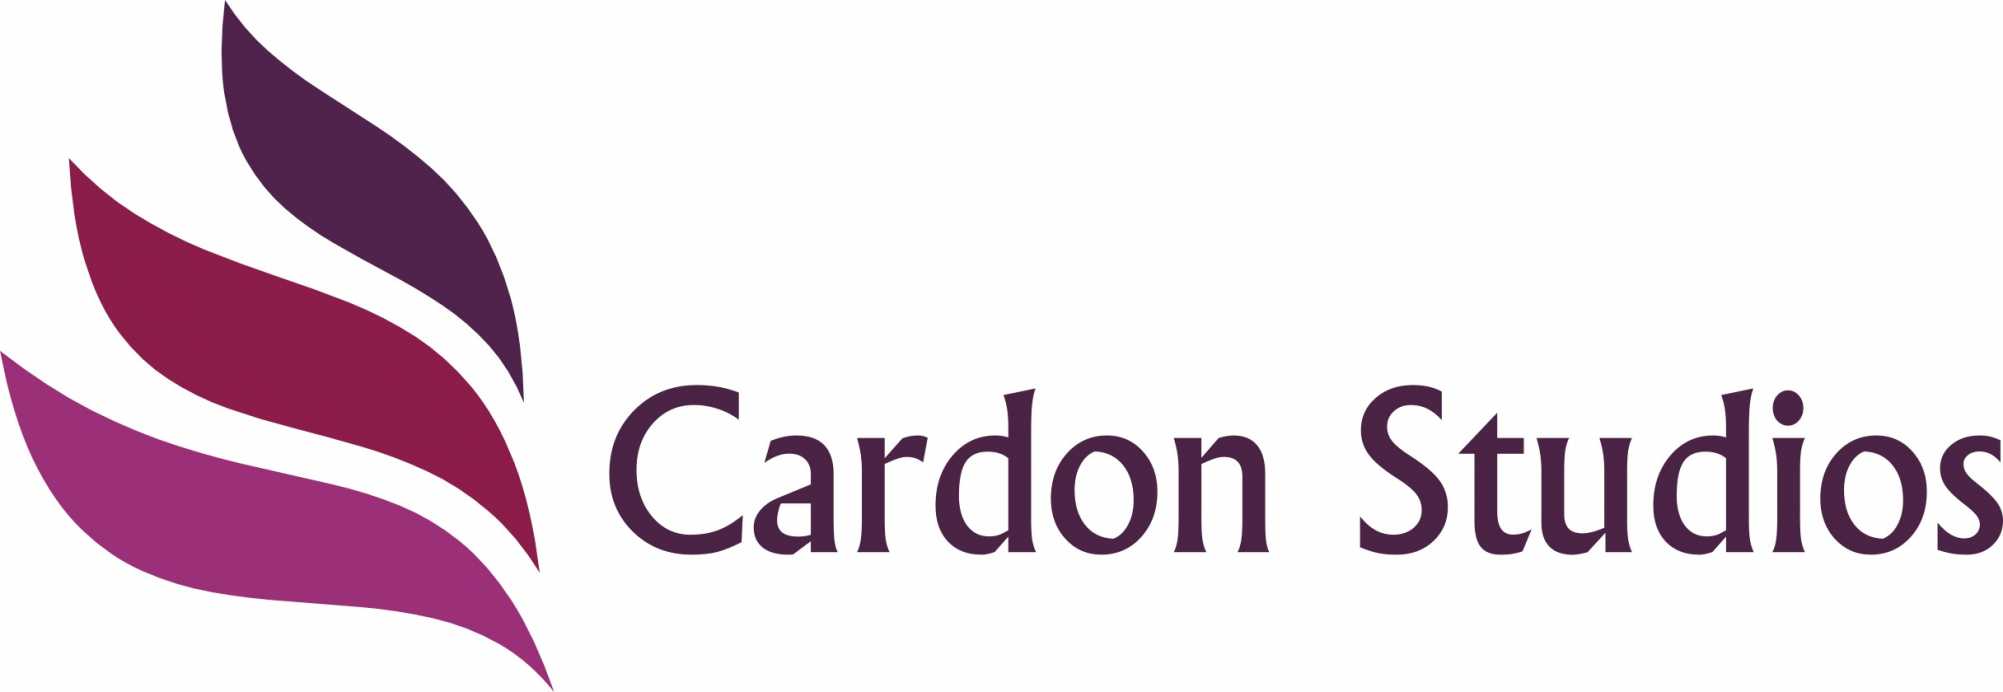 cardonstudios Logo